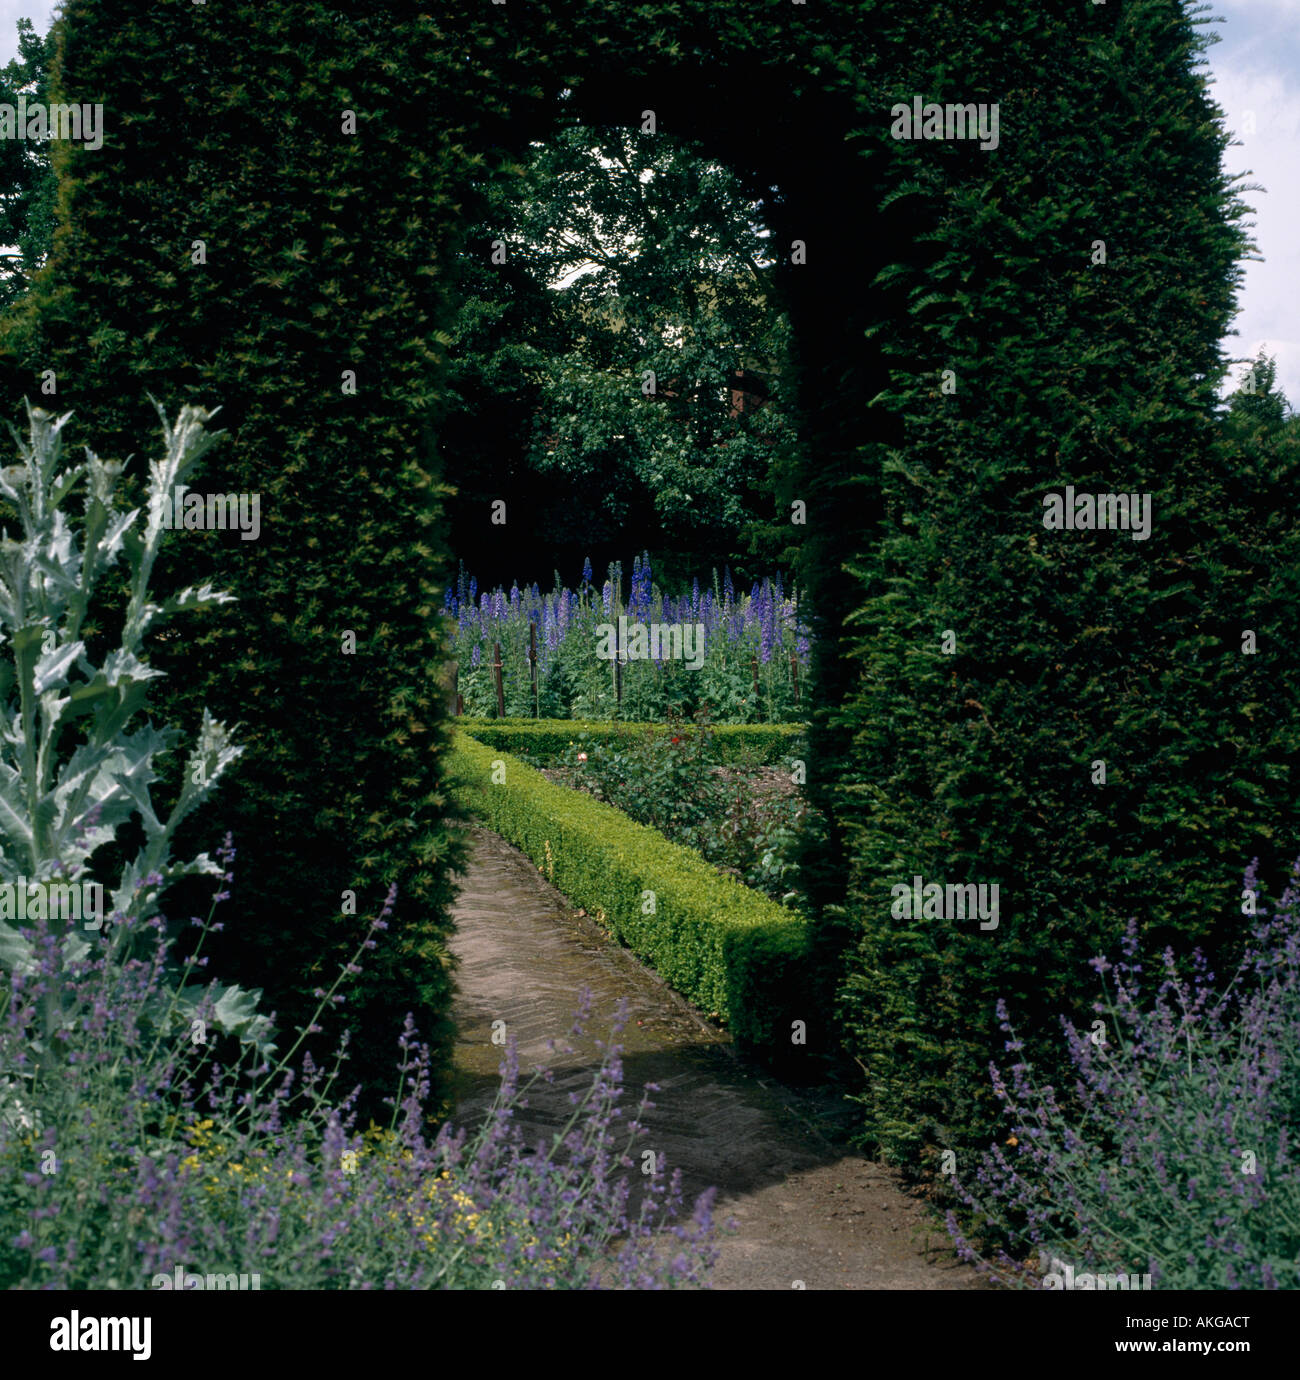 Blue nepeta accanto al percorso attraverso agganciato il faggio arch al giardino formale con delphiniums e agganciata siepe di bosso Foto Stock